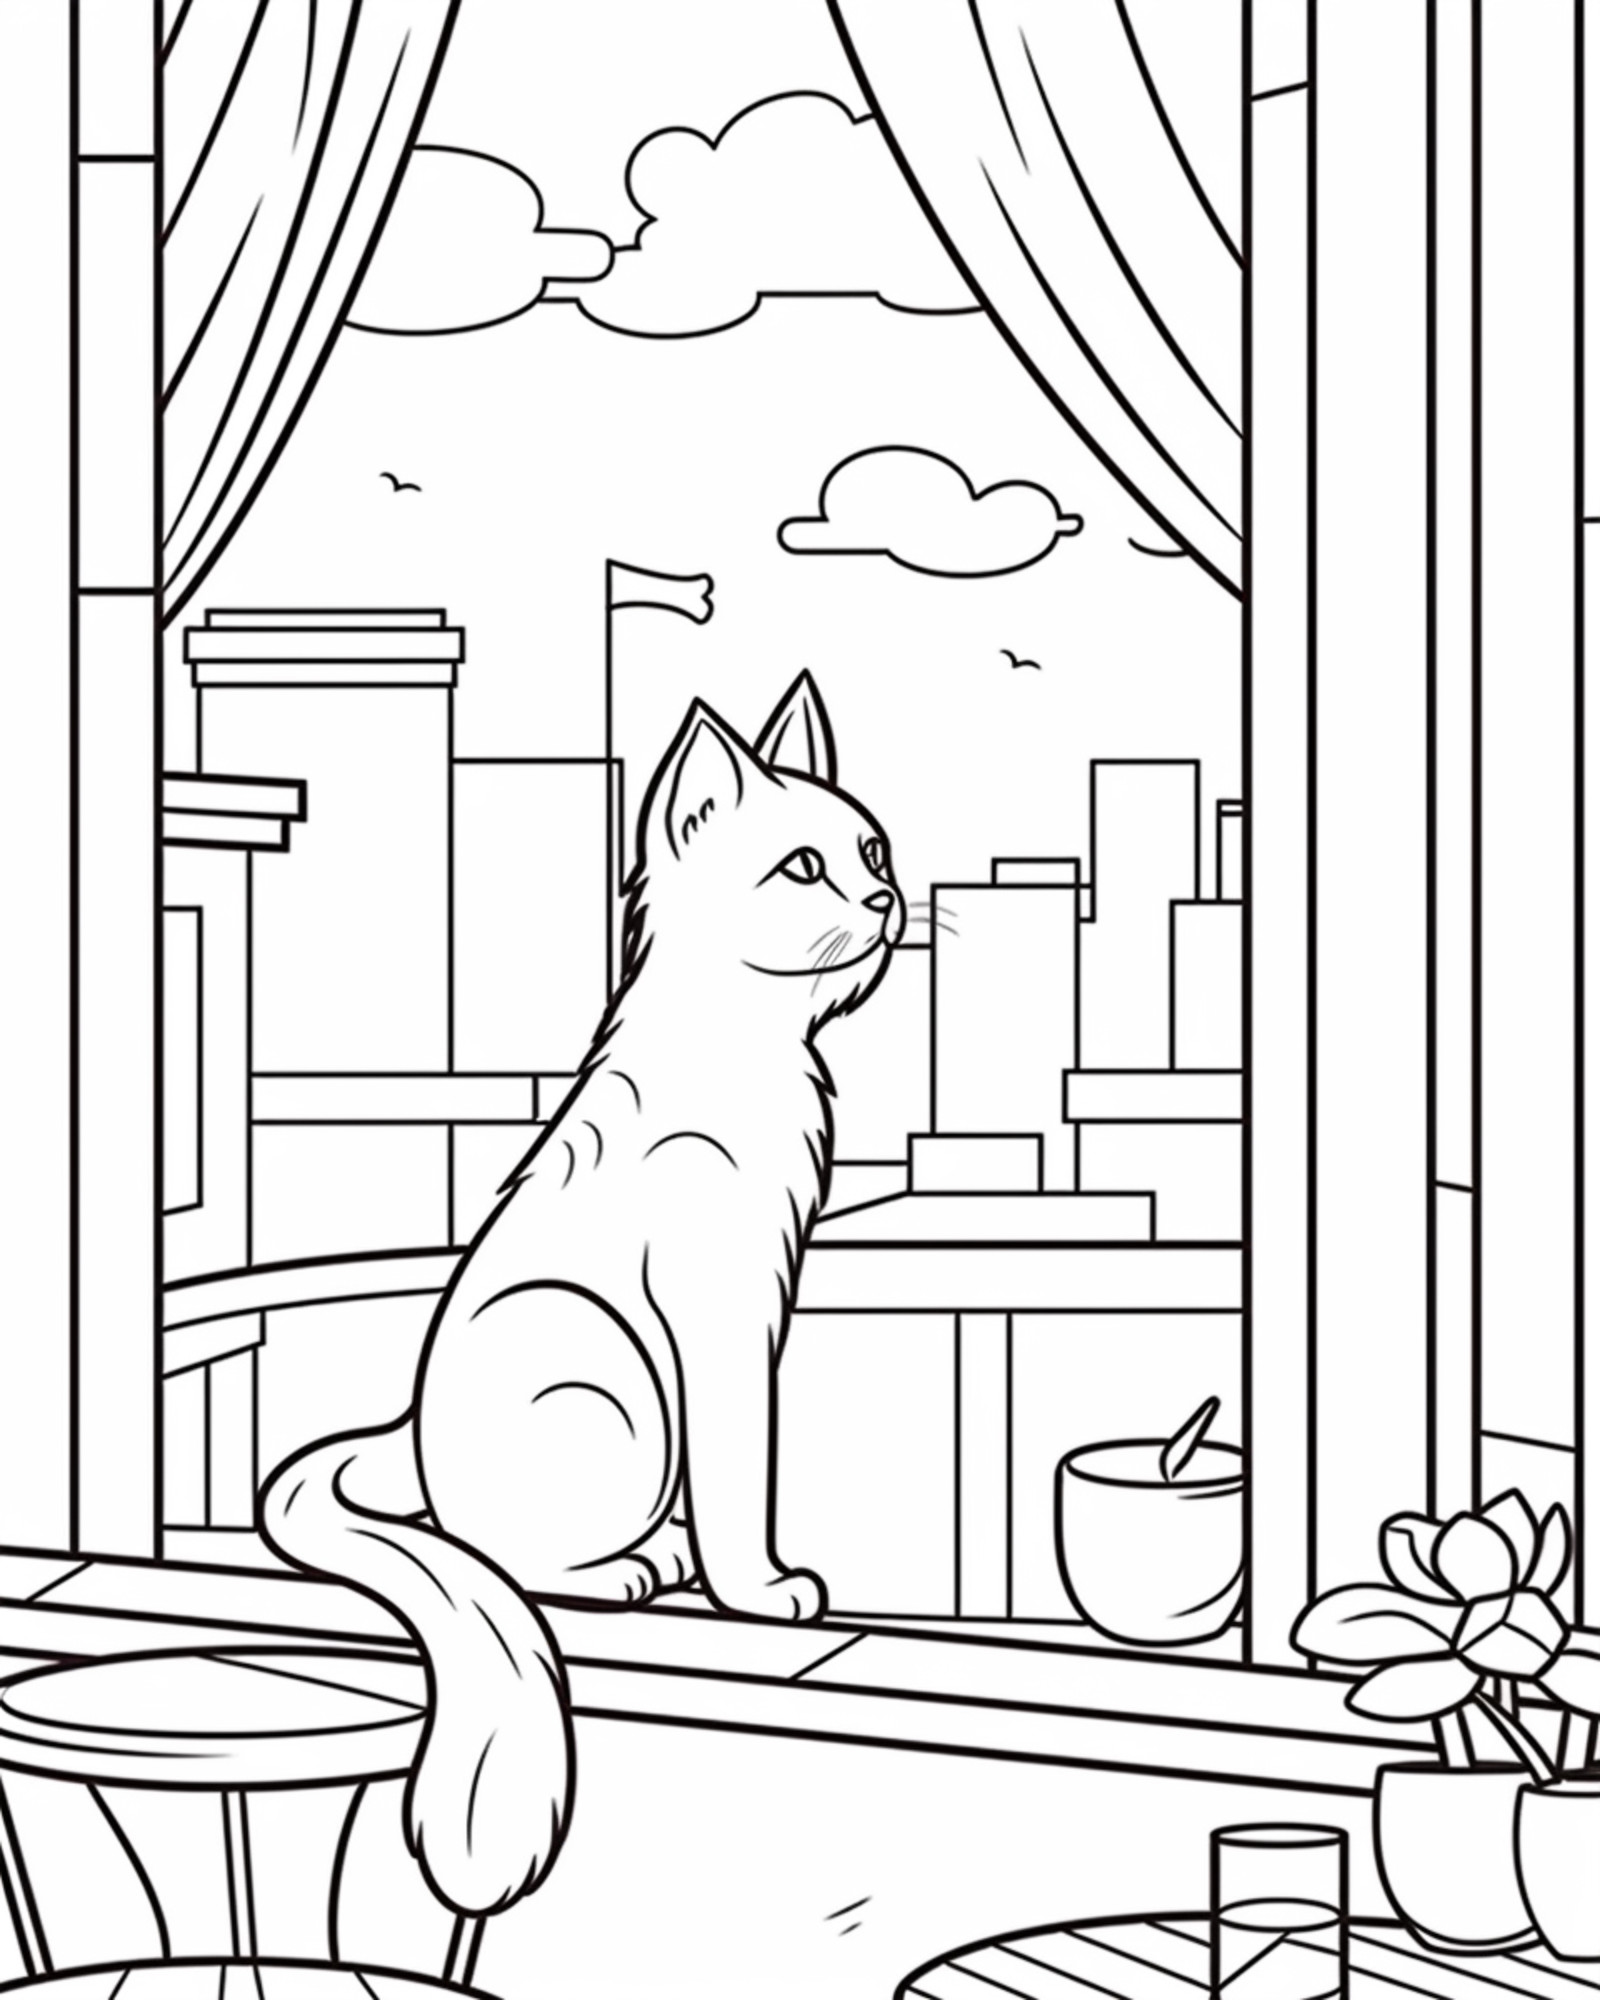 Раскраска для детей: кошка сидит у открытого окна